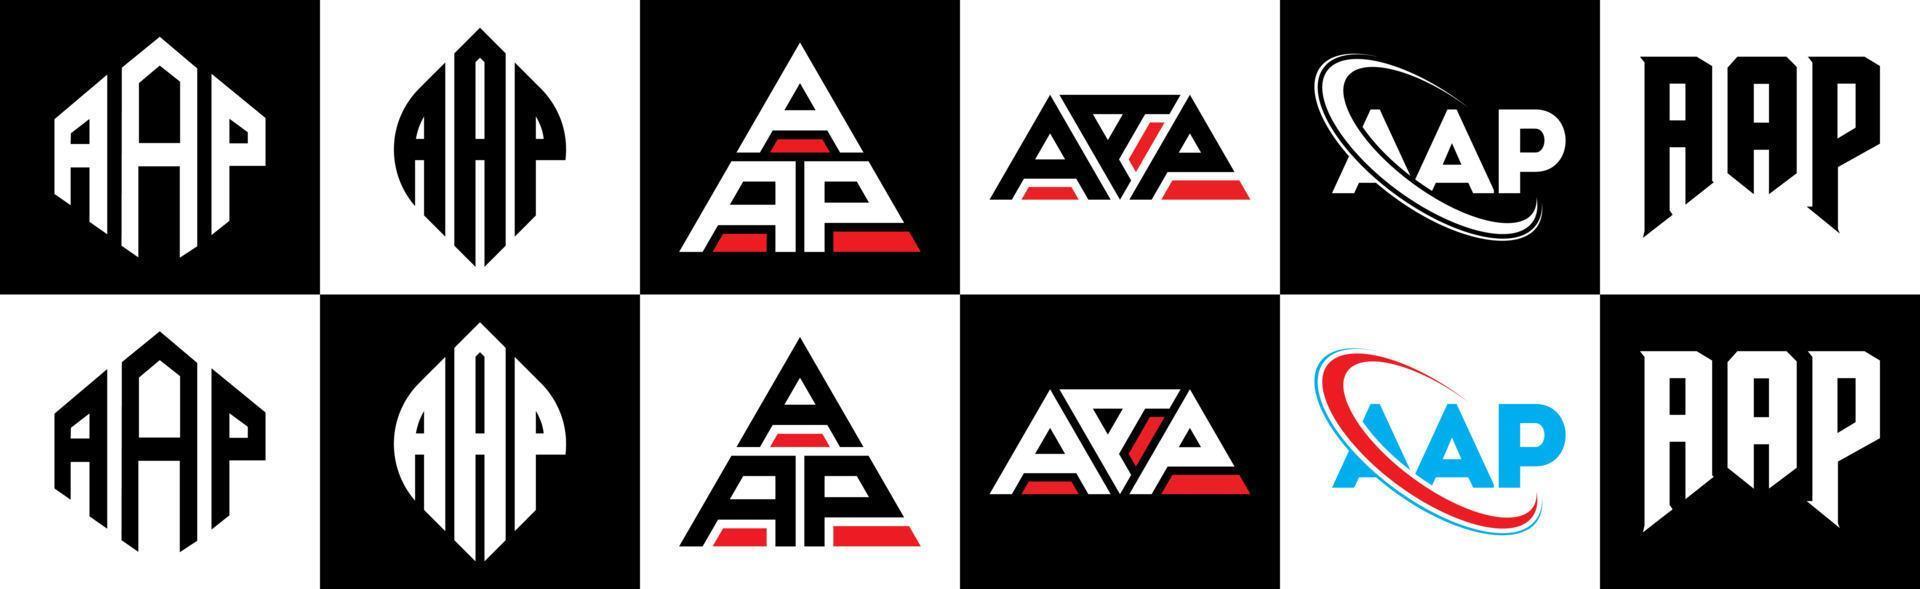 création de logo de lettre aap en six styles. aap polygone, cercle, triangle, hexagone, style plat et simple avec logo de lettre de variation de couleur noir et blanc dans un plan de travail. aap logo minimaliste et classique vecteur